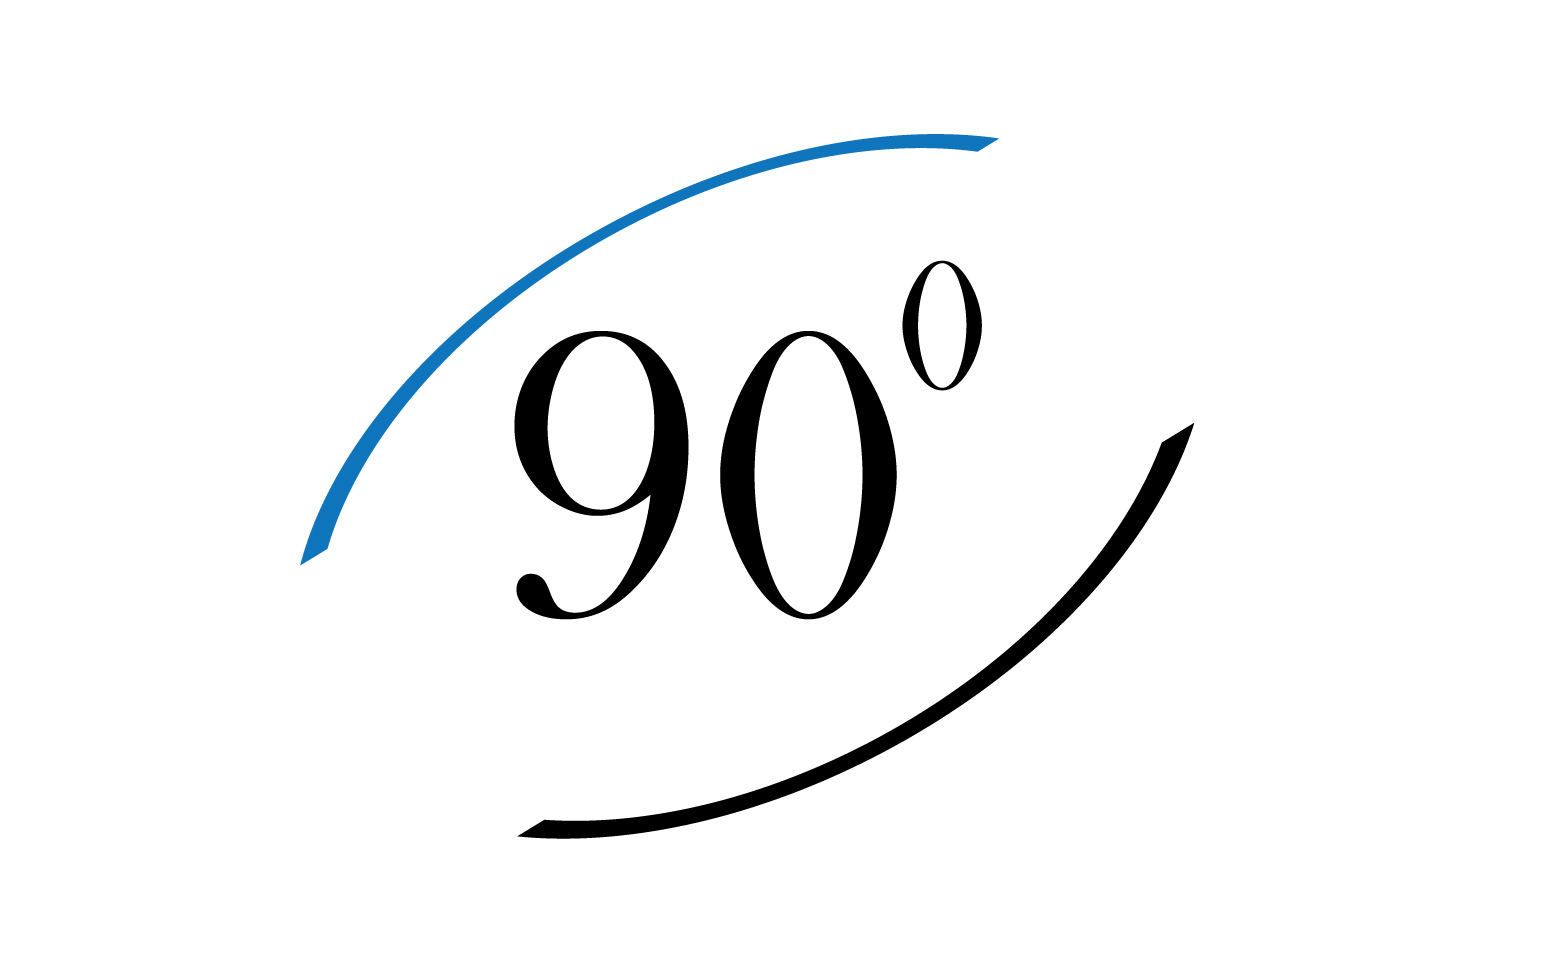 90 degree angle rotation icon symbol logo v62